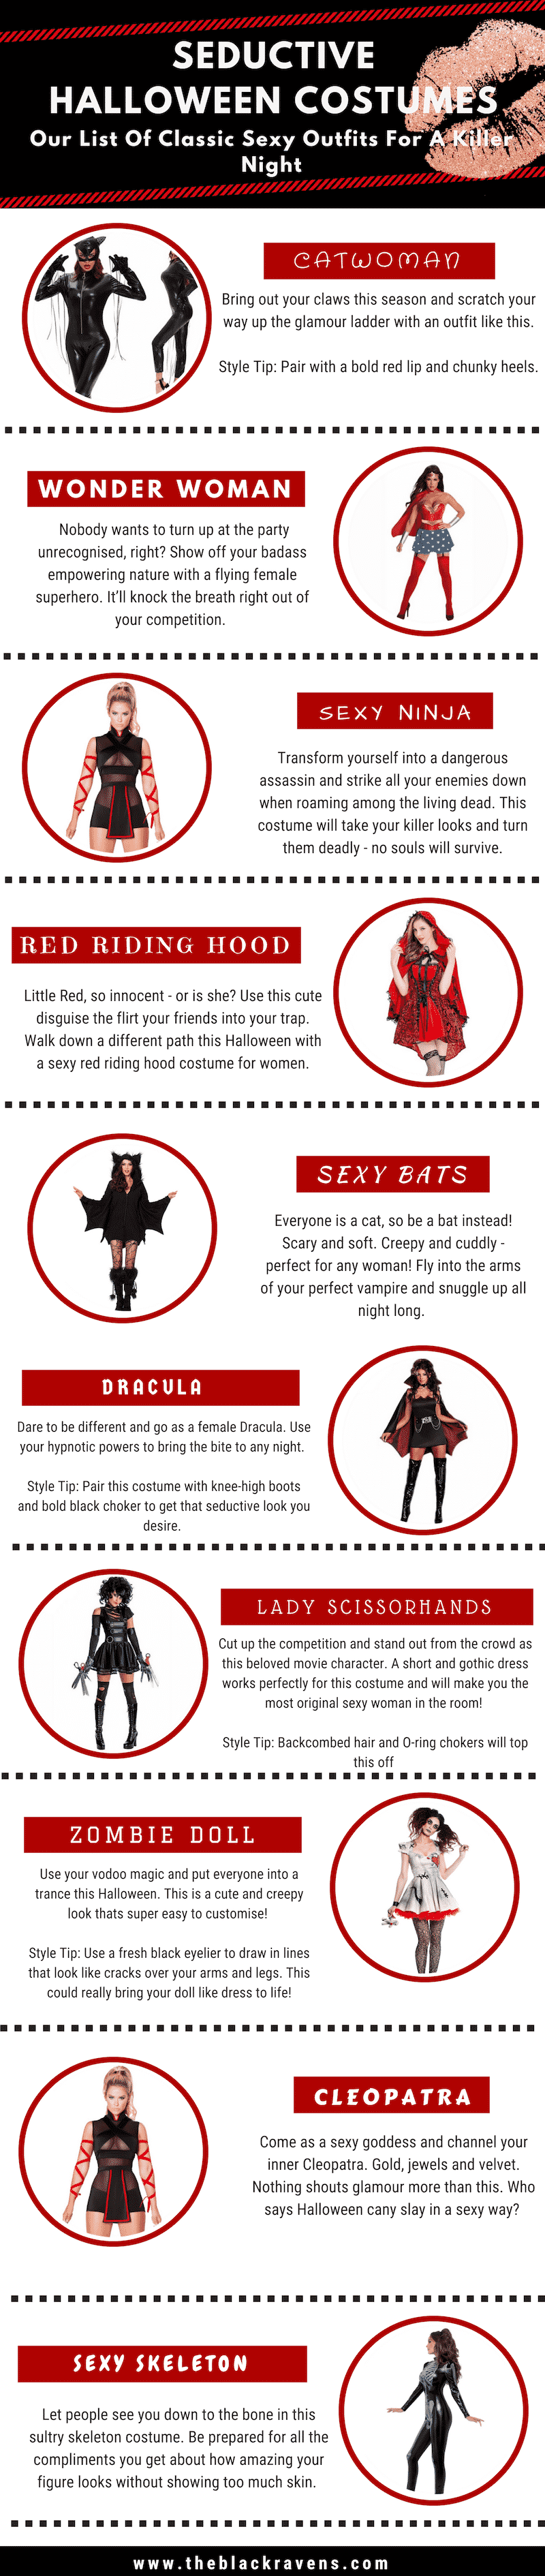 Seductive Halloween Costume Infographic